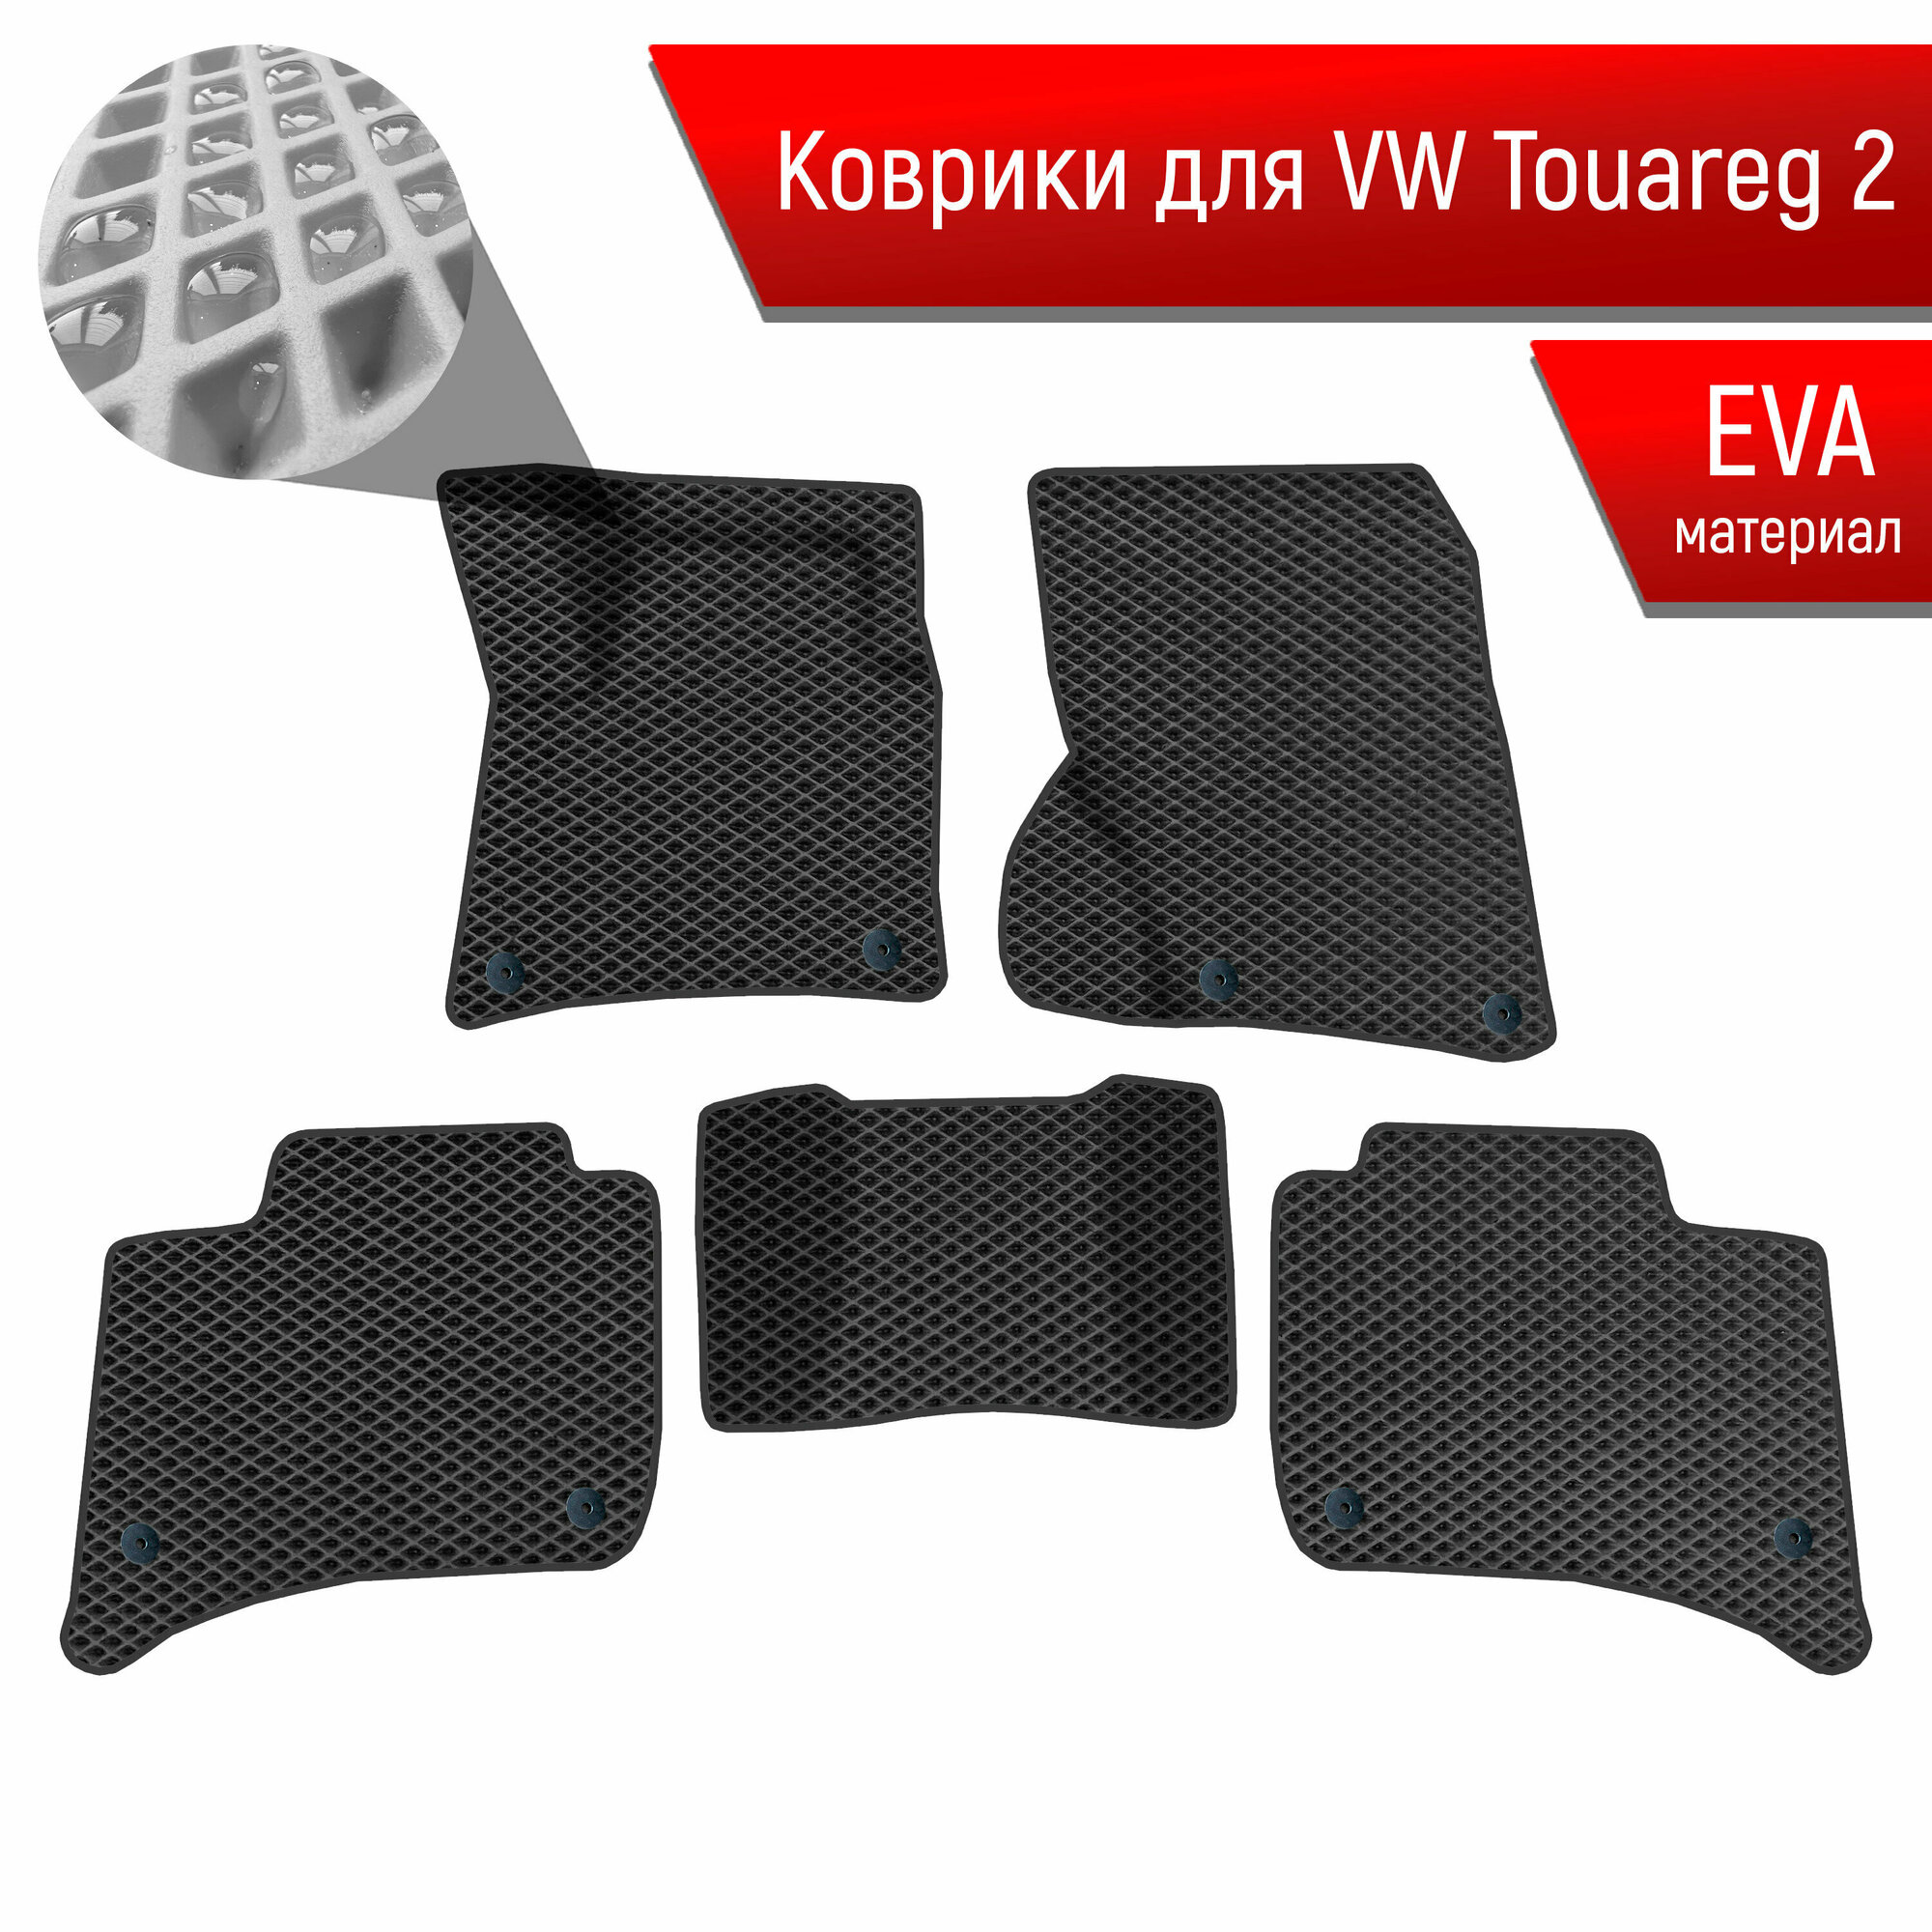 Коврики ЭВА Ромб для авто Фольцваген Таурег 2 / Volkswagen Touareg 2 2010-2014 Г. В. Чёрный с Чёрным кантом